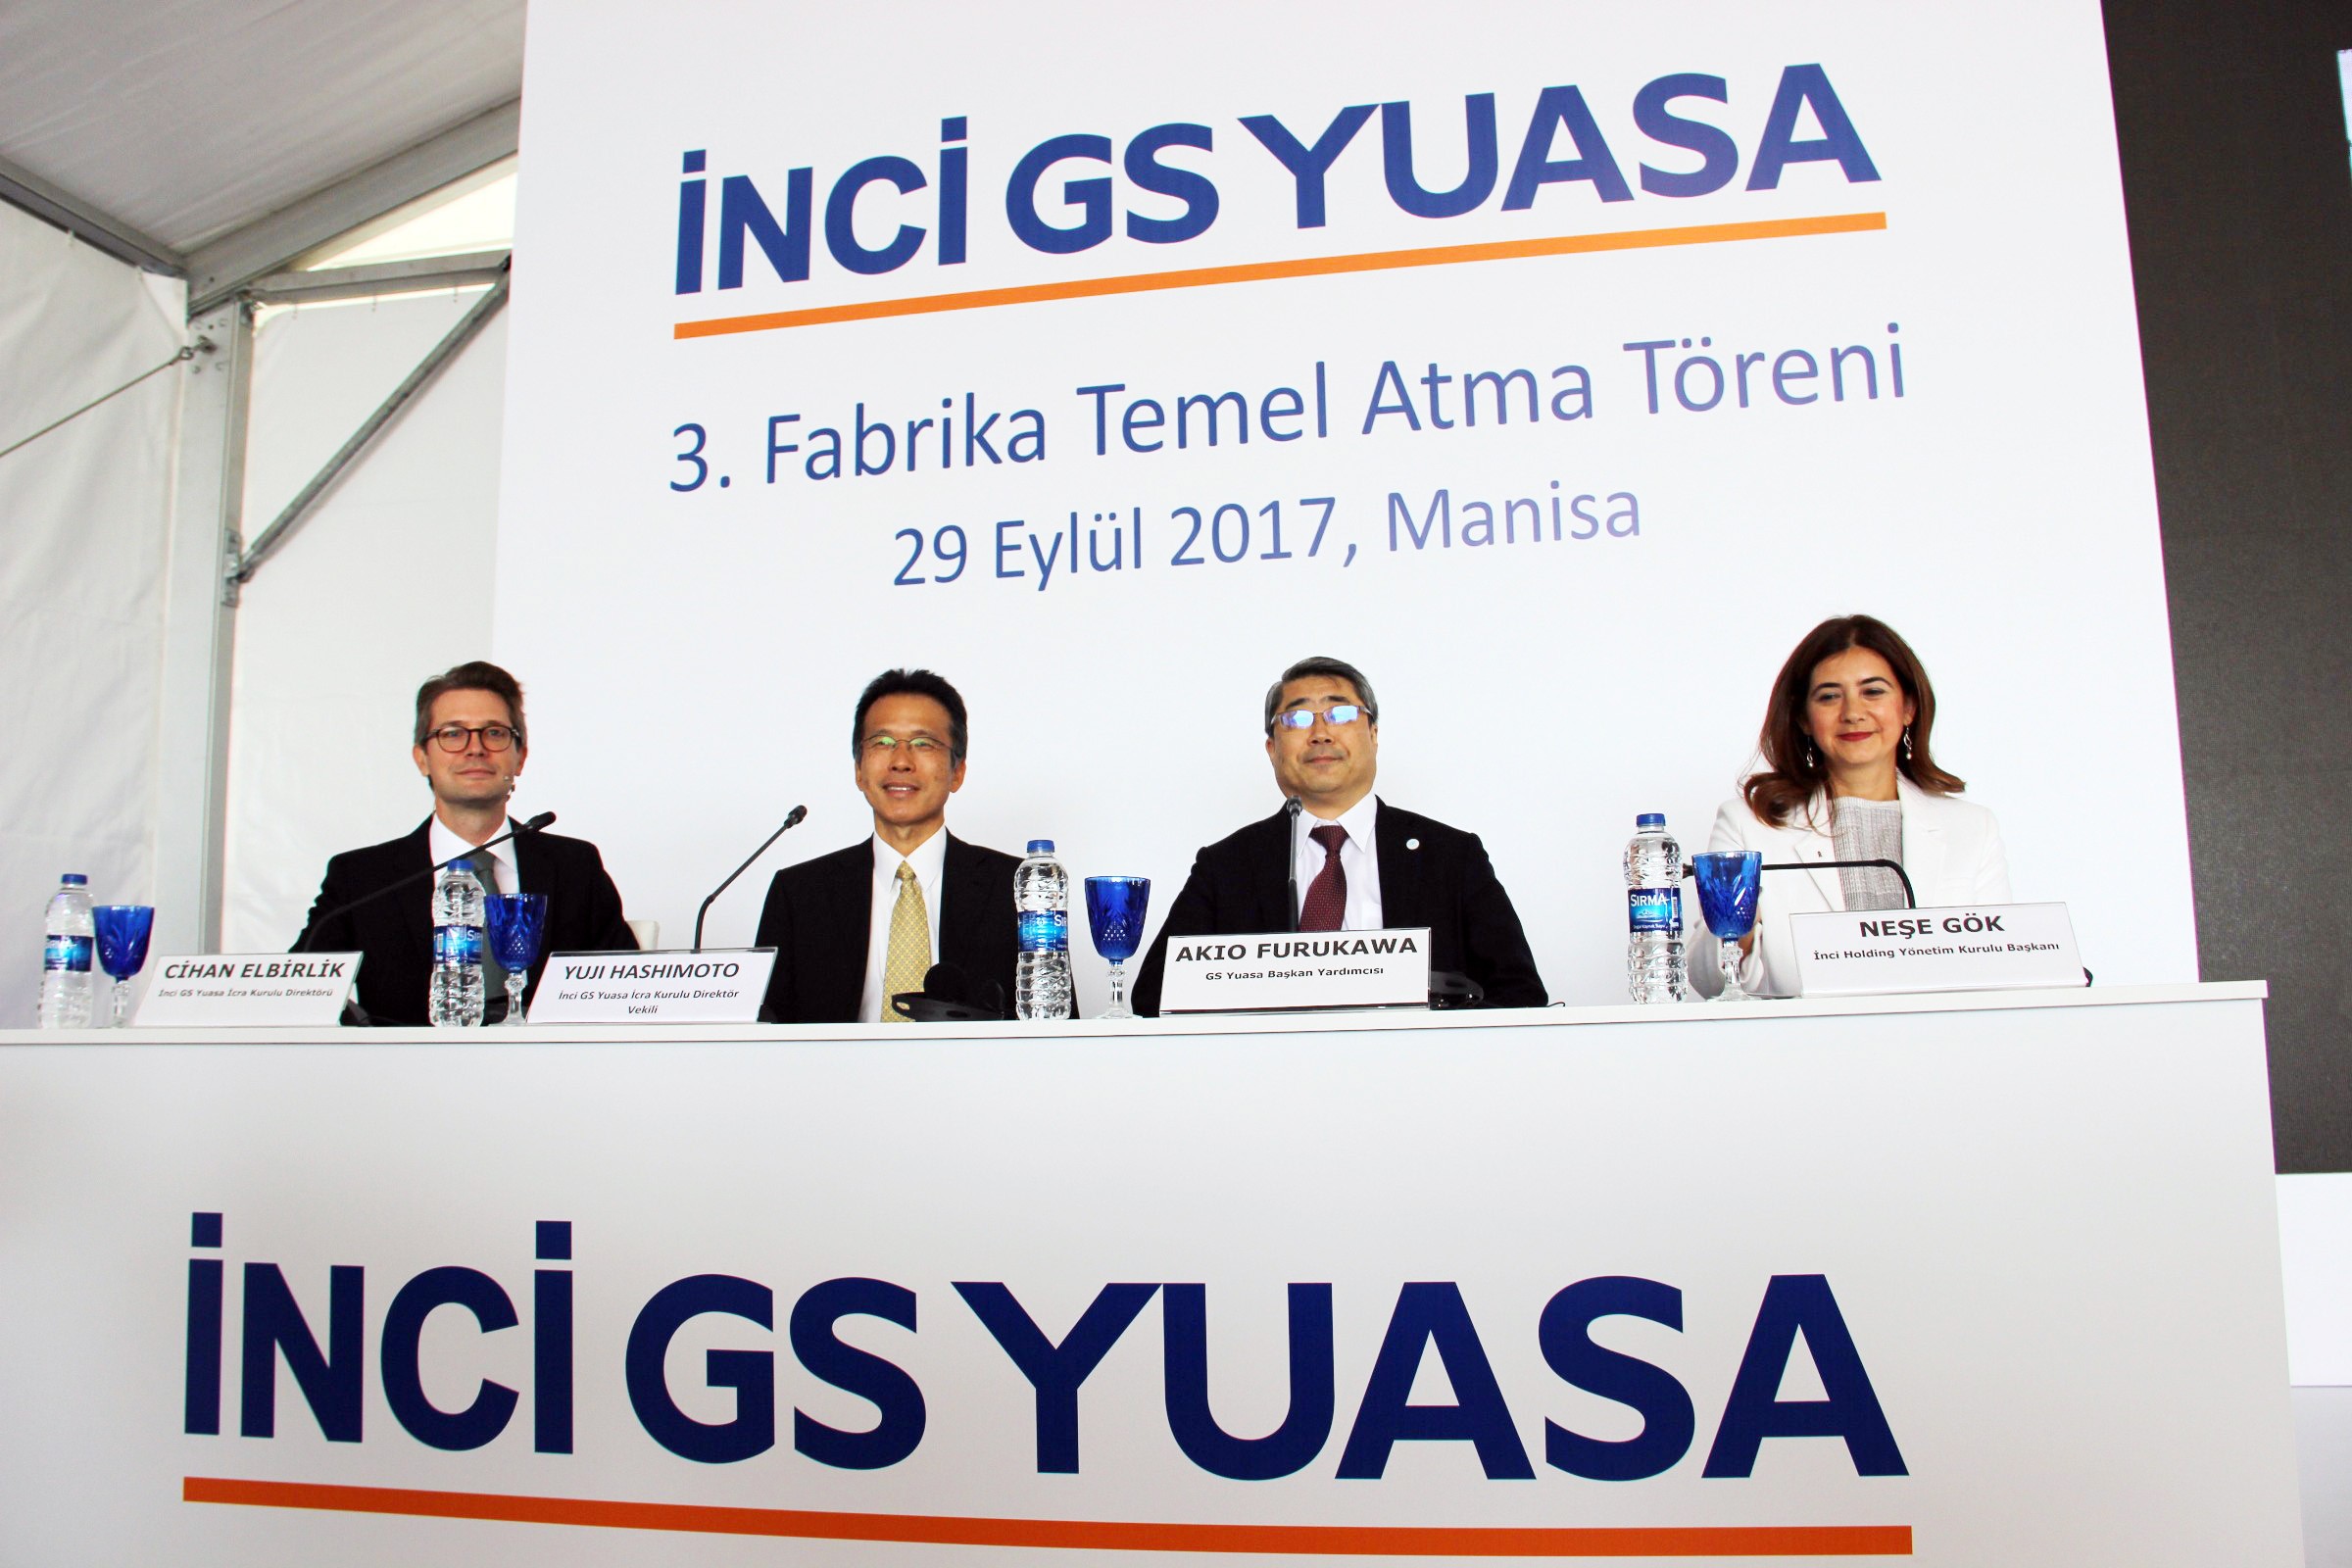 Manisa’da Türk-Japon ortaklığıyla 3 yılda 200 milyonluk yatırım-2432